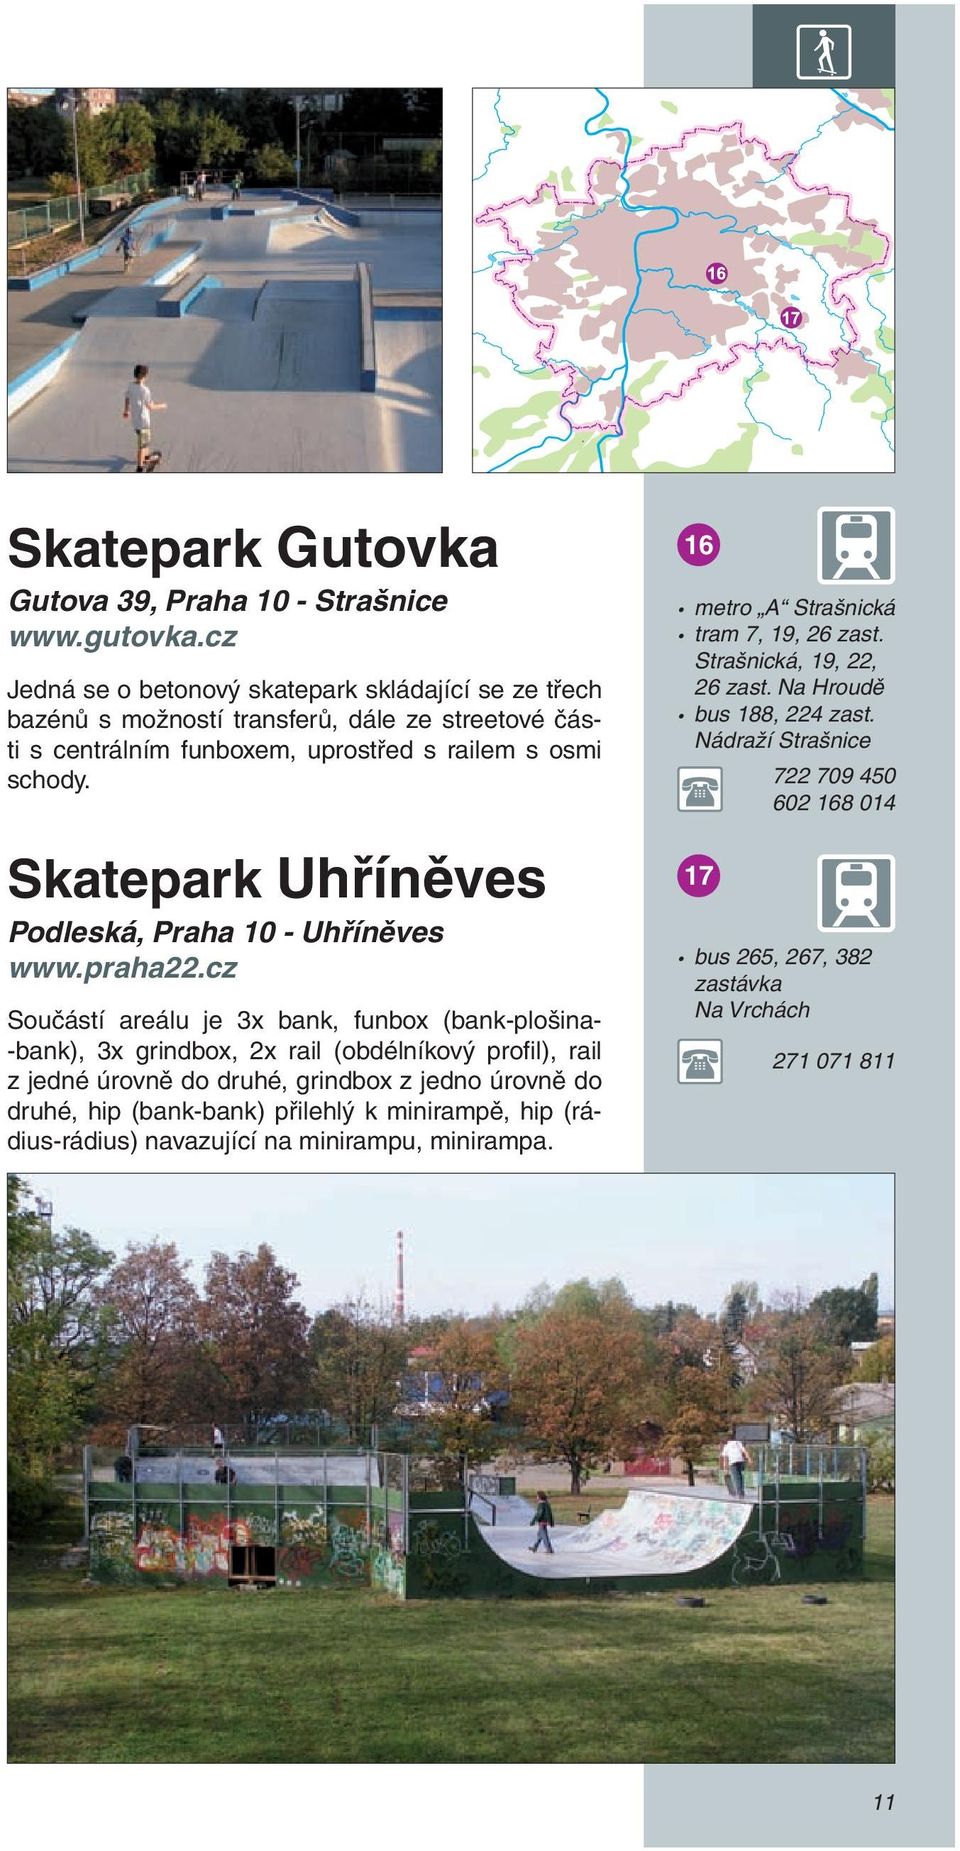 Skatepark Uhříněves Podleská, Praha 10 - Uhříněves www.praha22.